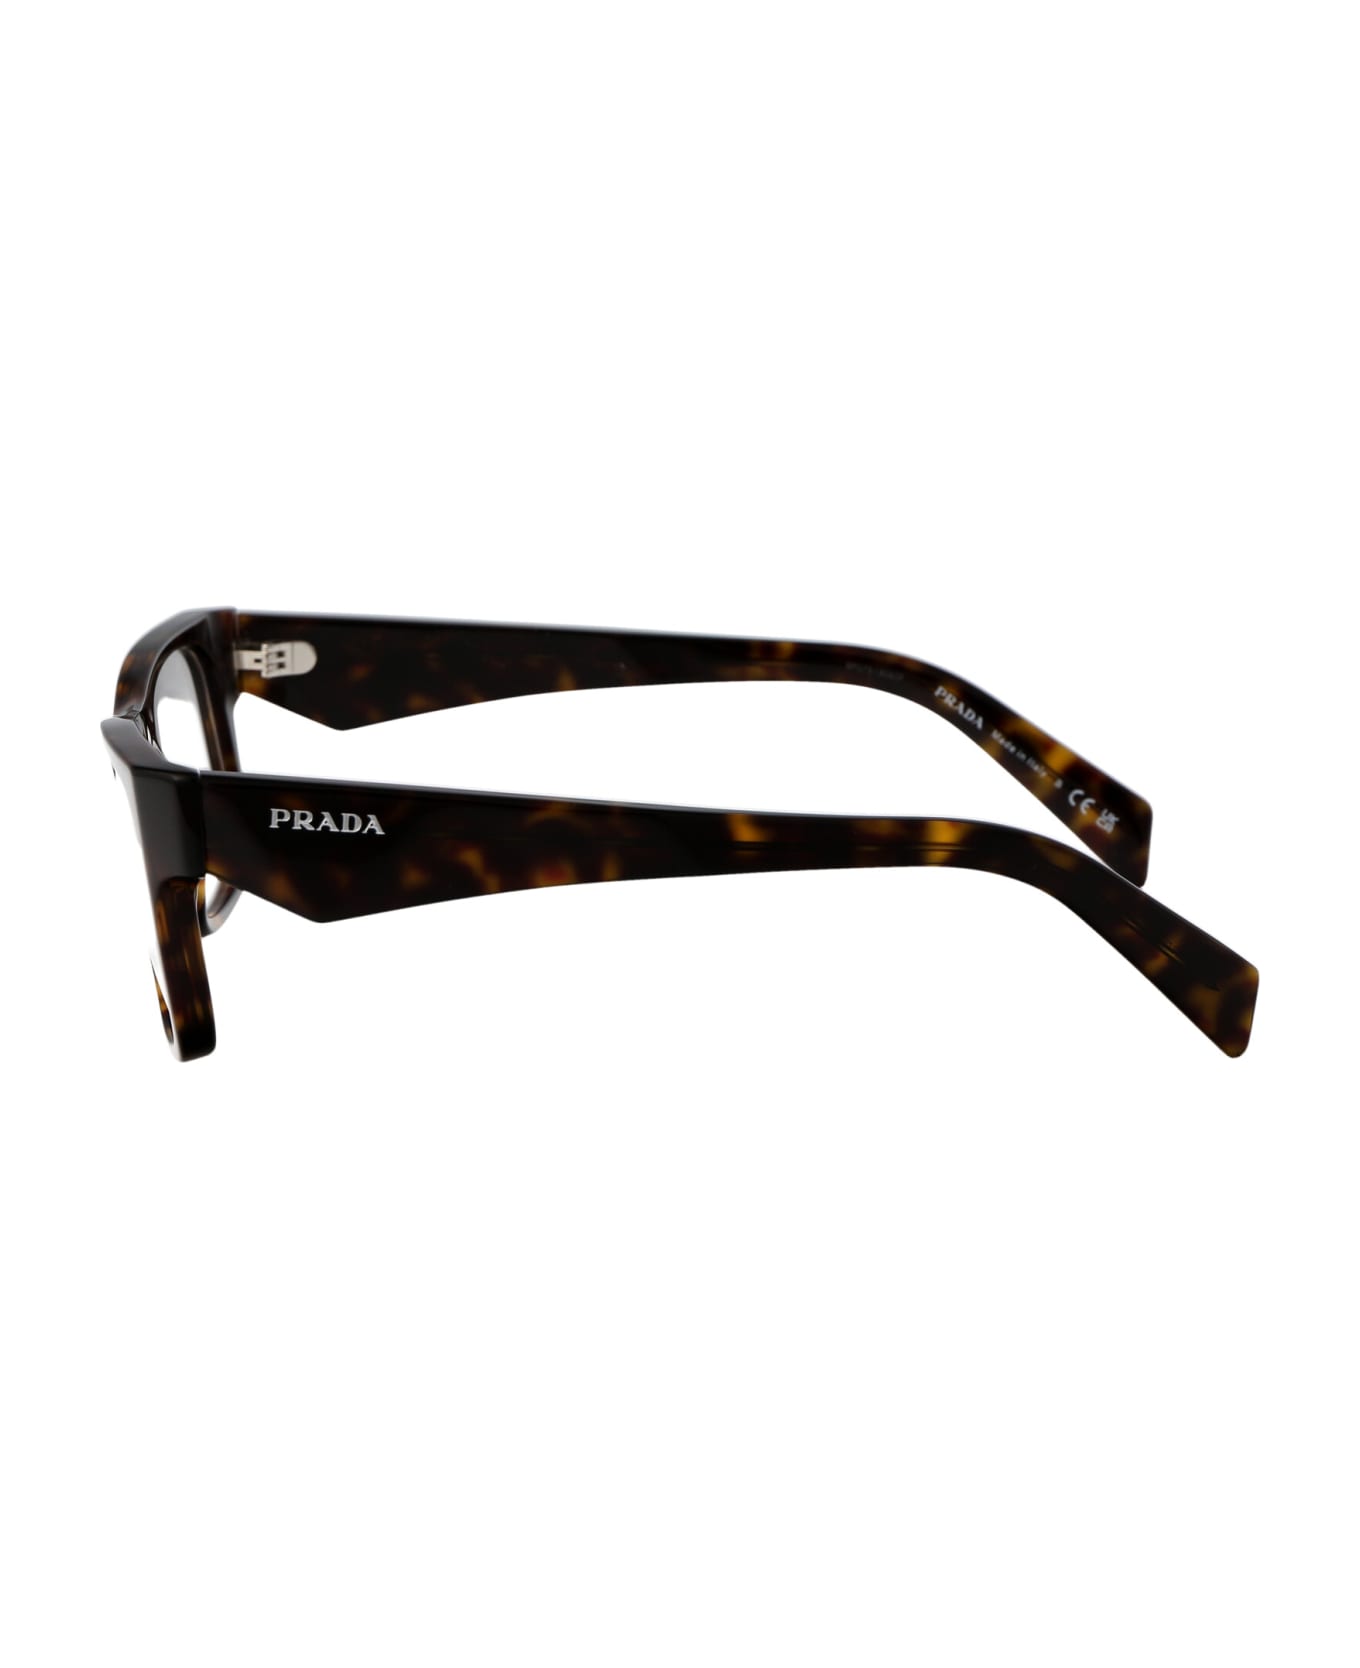 Prada Eyewear 0pr 22zv Glasses - 19J1O1 Loden/Black アイウェア